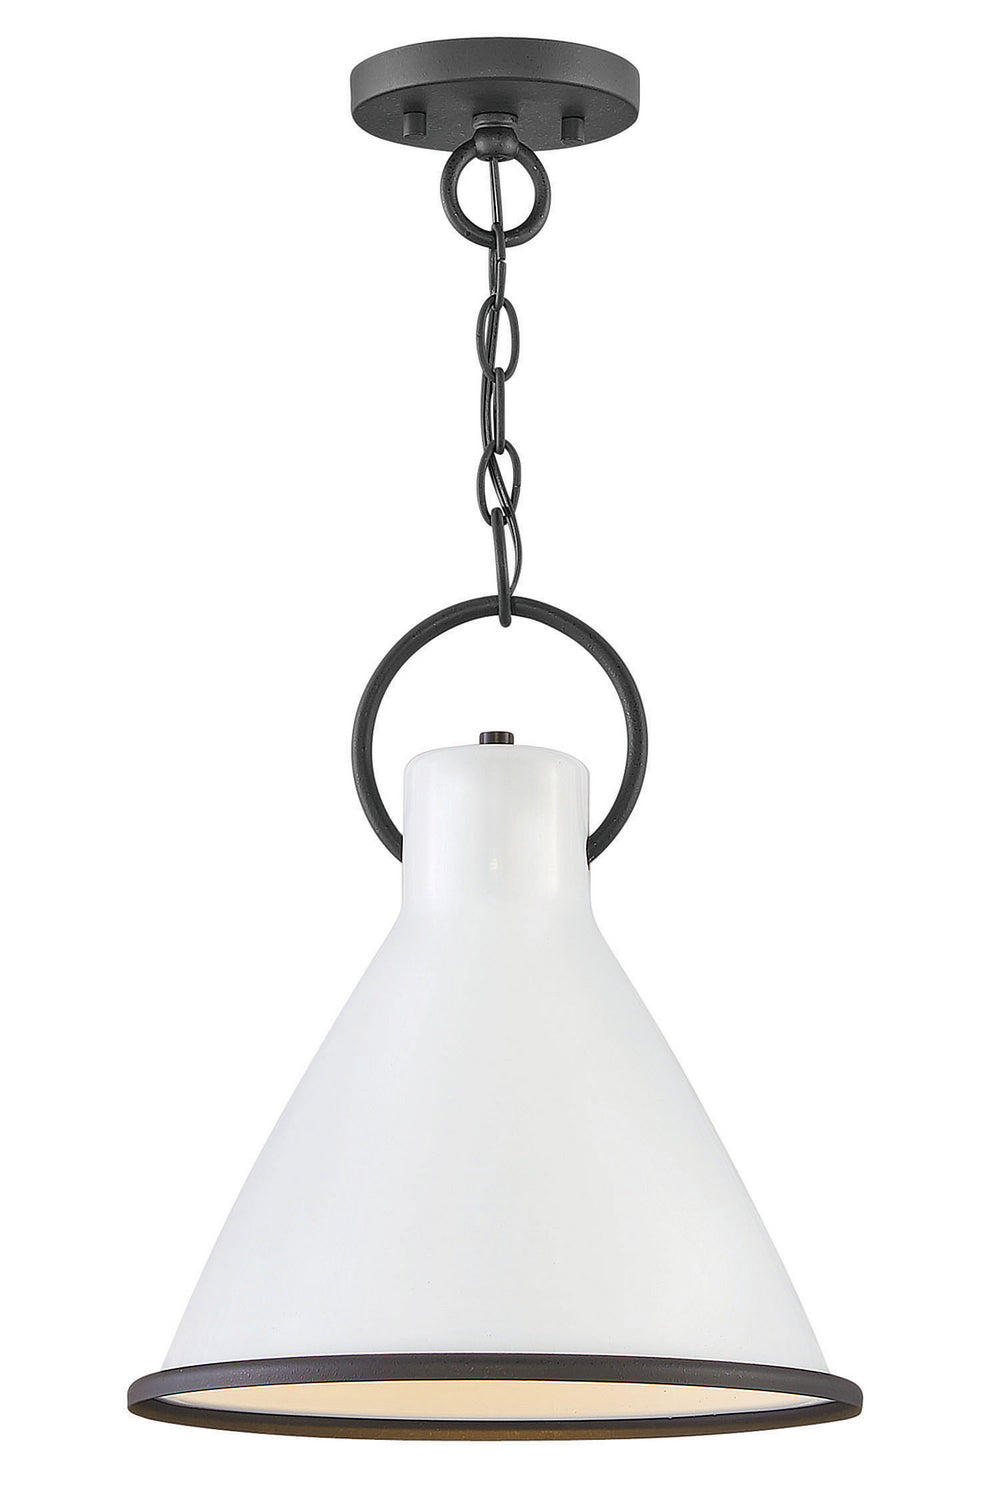 Hinkley Canada - LED Pendant - Winnie - Polished White- Union Lighting Luminaires Decor